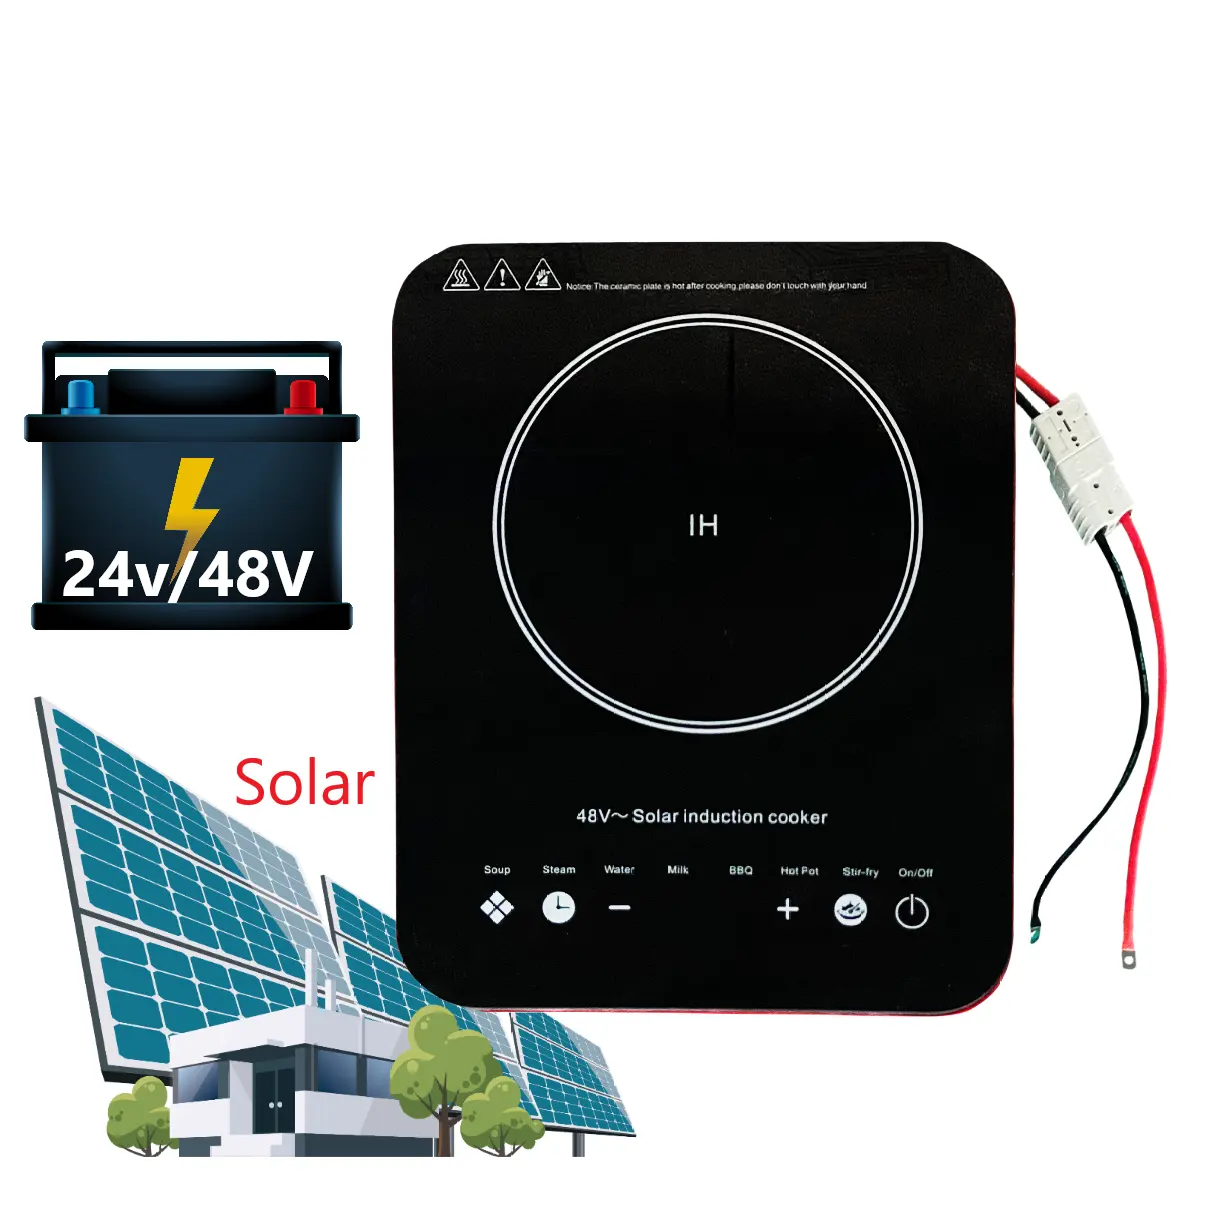 New Design Smart Solar Battery Powered Stove Cooker Dc 24V 48V Induction Cooker Ceramic Cooktop Cooking Hobs